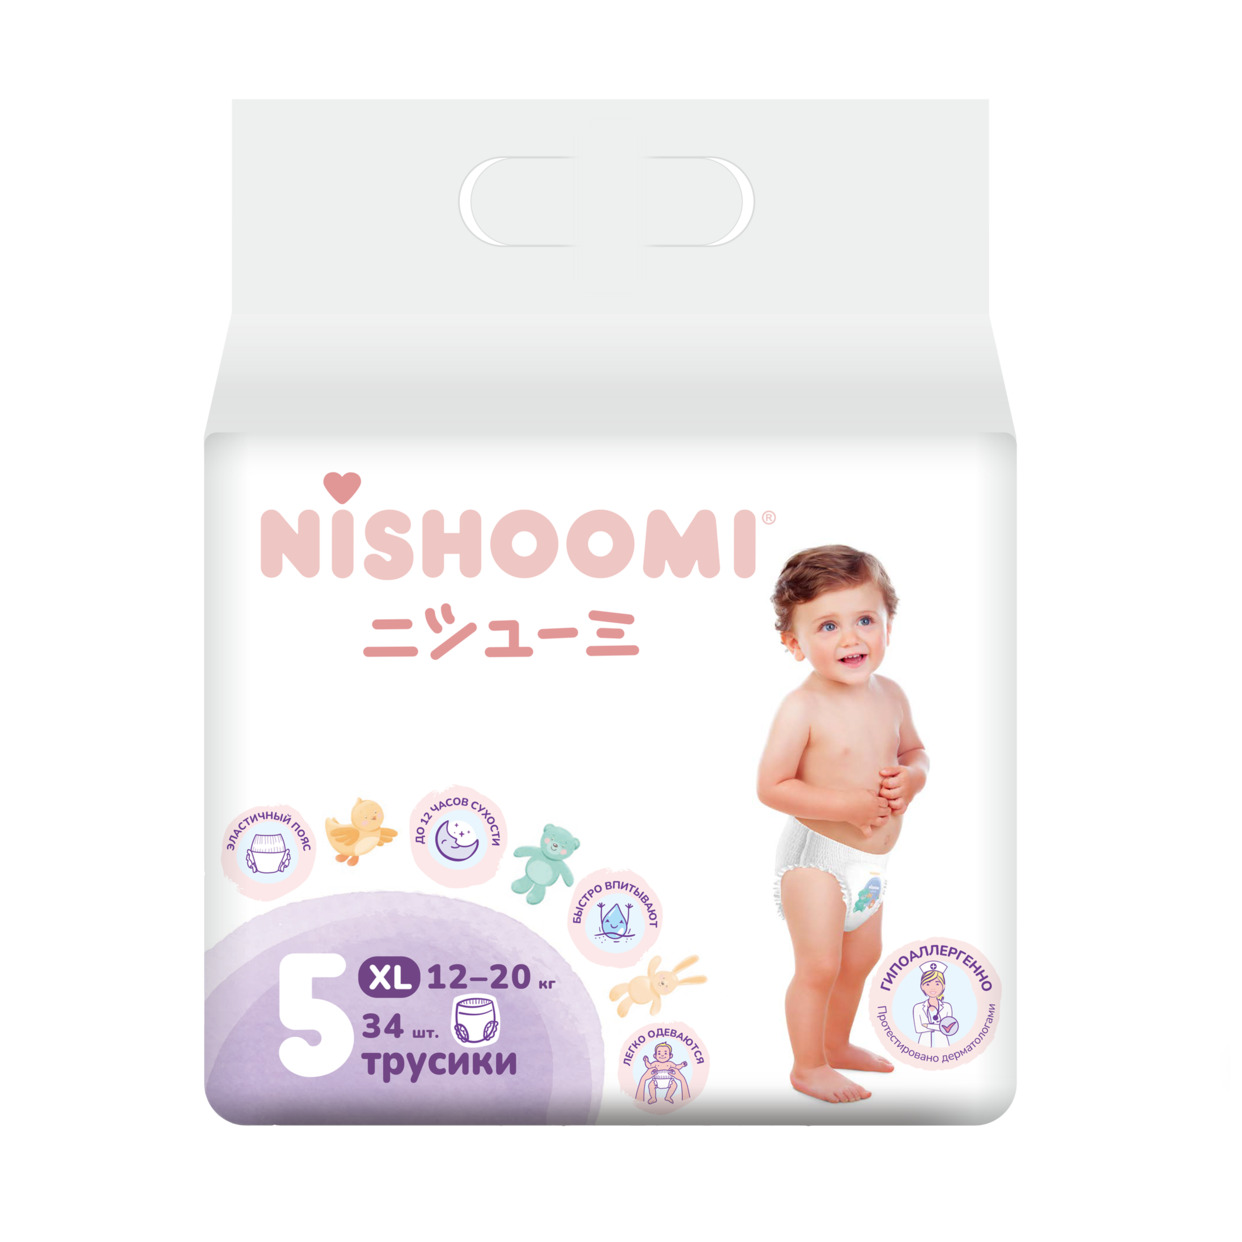 Акция в Пятерочке на Изделия санитарно-гигиенические для ухода за детьми Nishoomi подгузники-трусики детские одноразовые. Размер «Макси» (XL (5)), для де тей весом 12-20 кг, 34 штуки в уп.